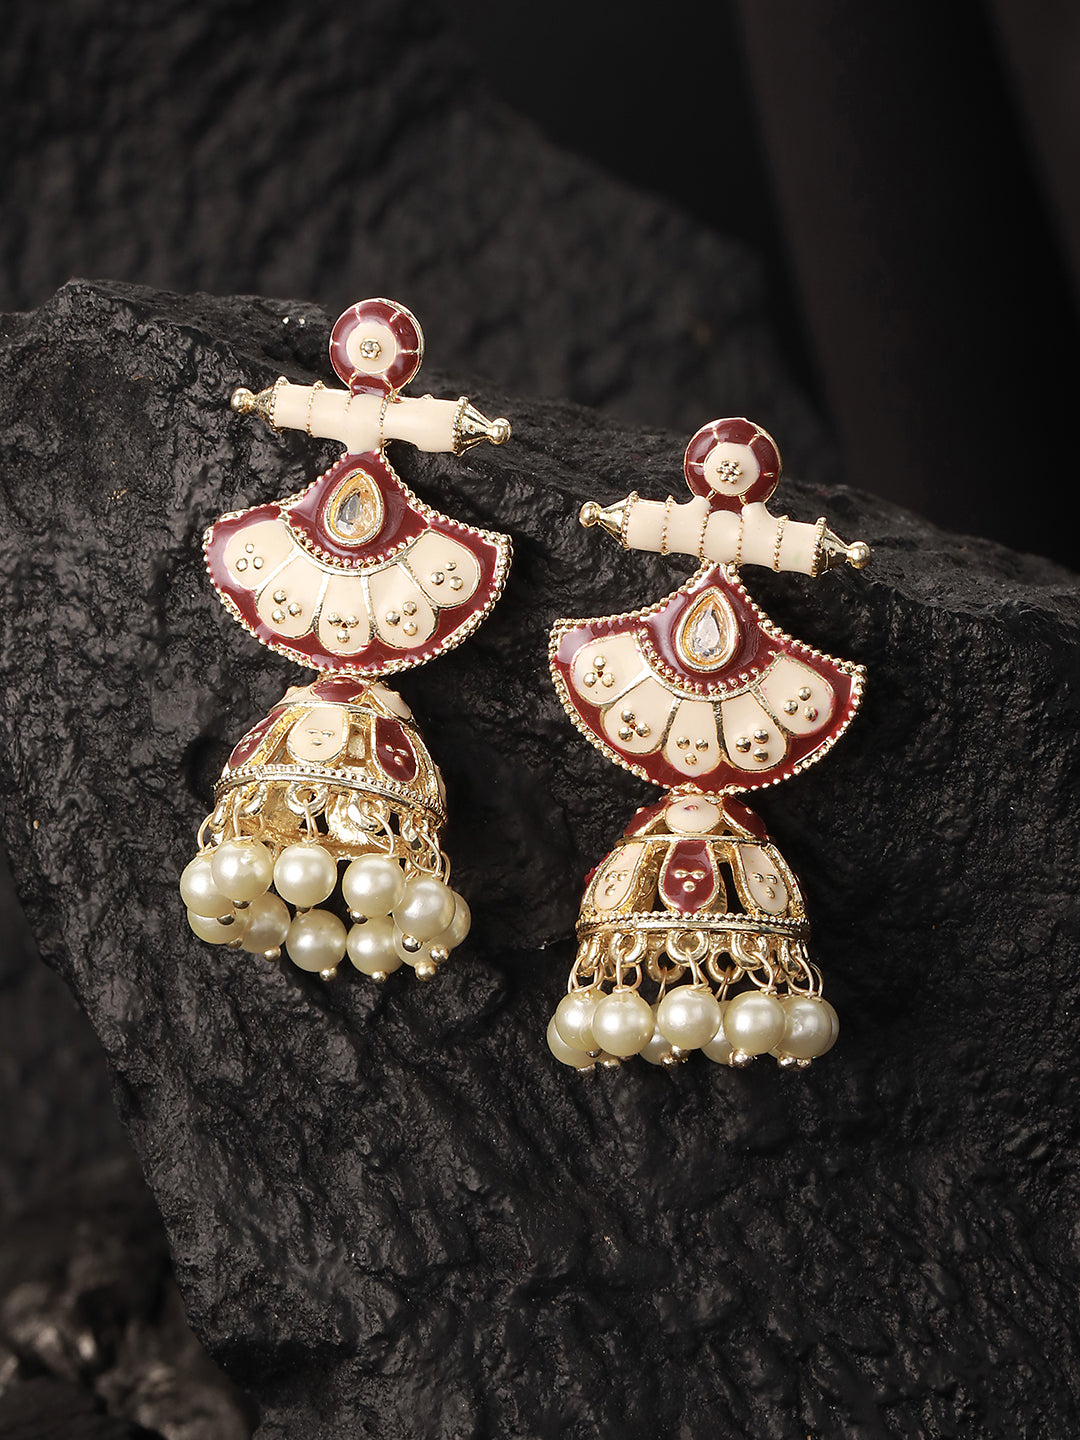 Gold-Toned White & Marron Meenakari Jhumkas Earrings